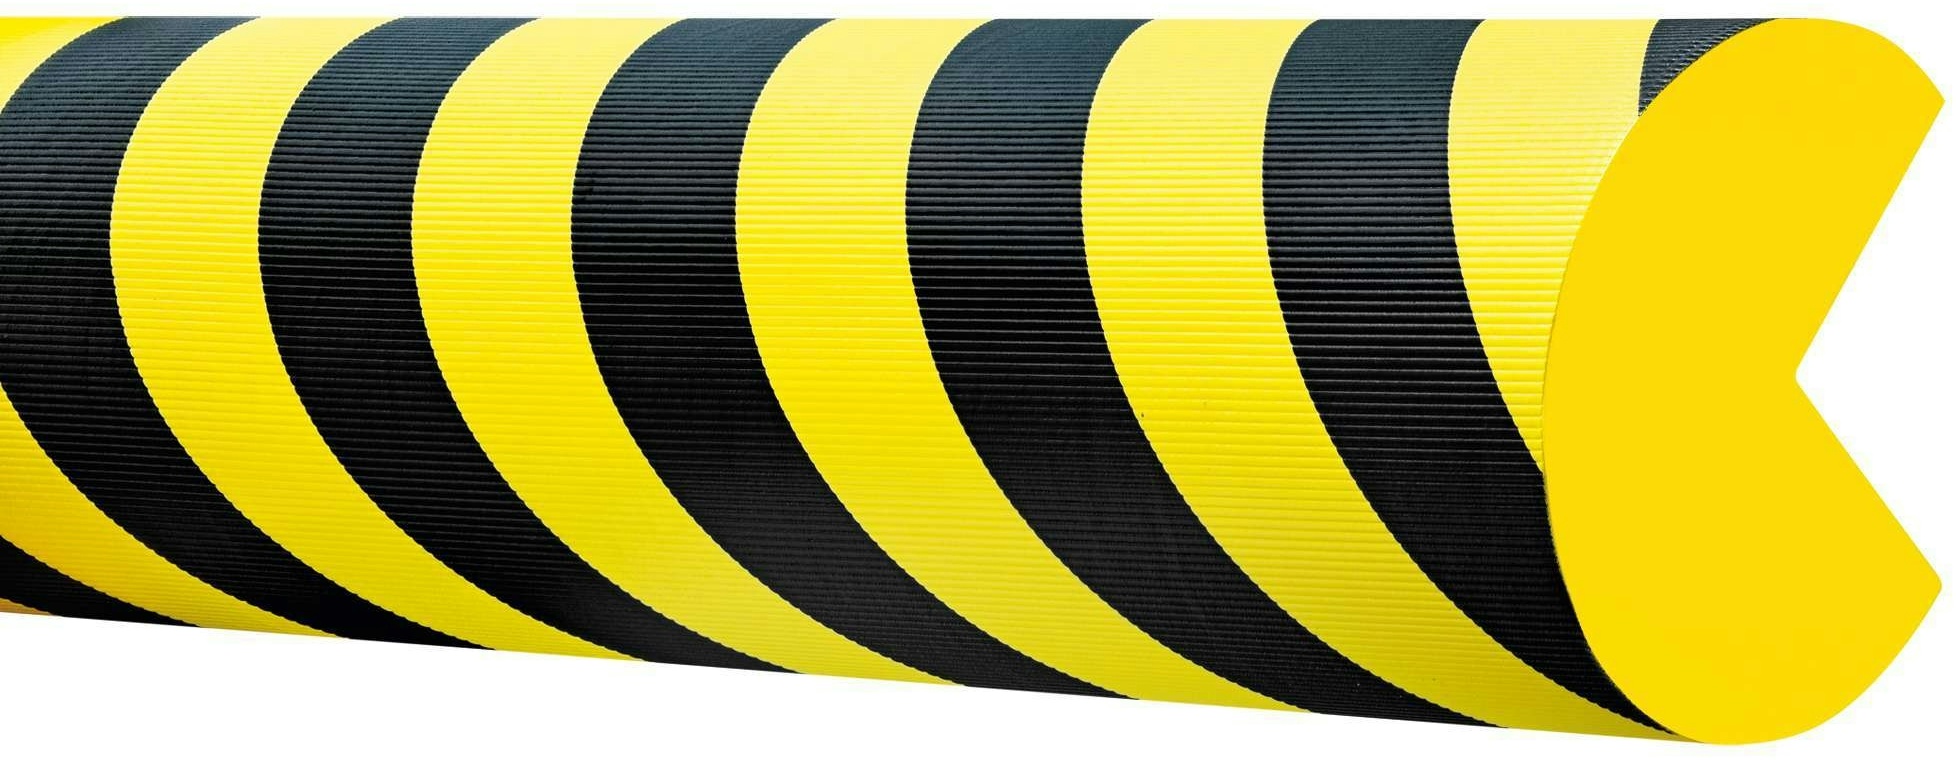 PROREGAL Prall- & Kantenschutz aus hochwertigem EVAC-Schaum | Geeignet für den Innenbereich | LxØ  100x15cm | Selbstklebend | Schwarz-Gelb